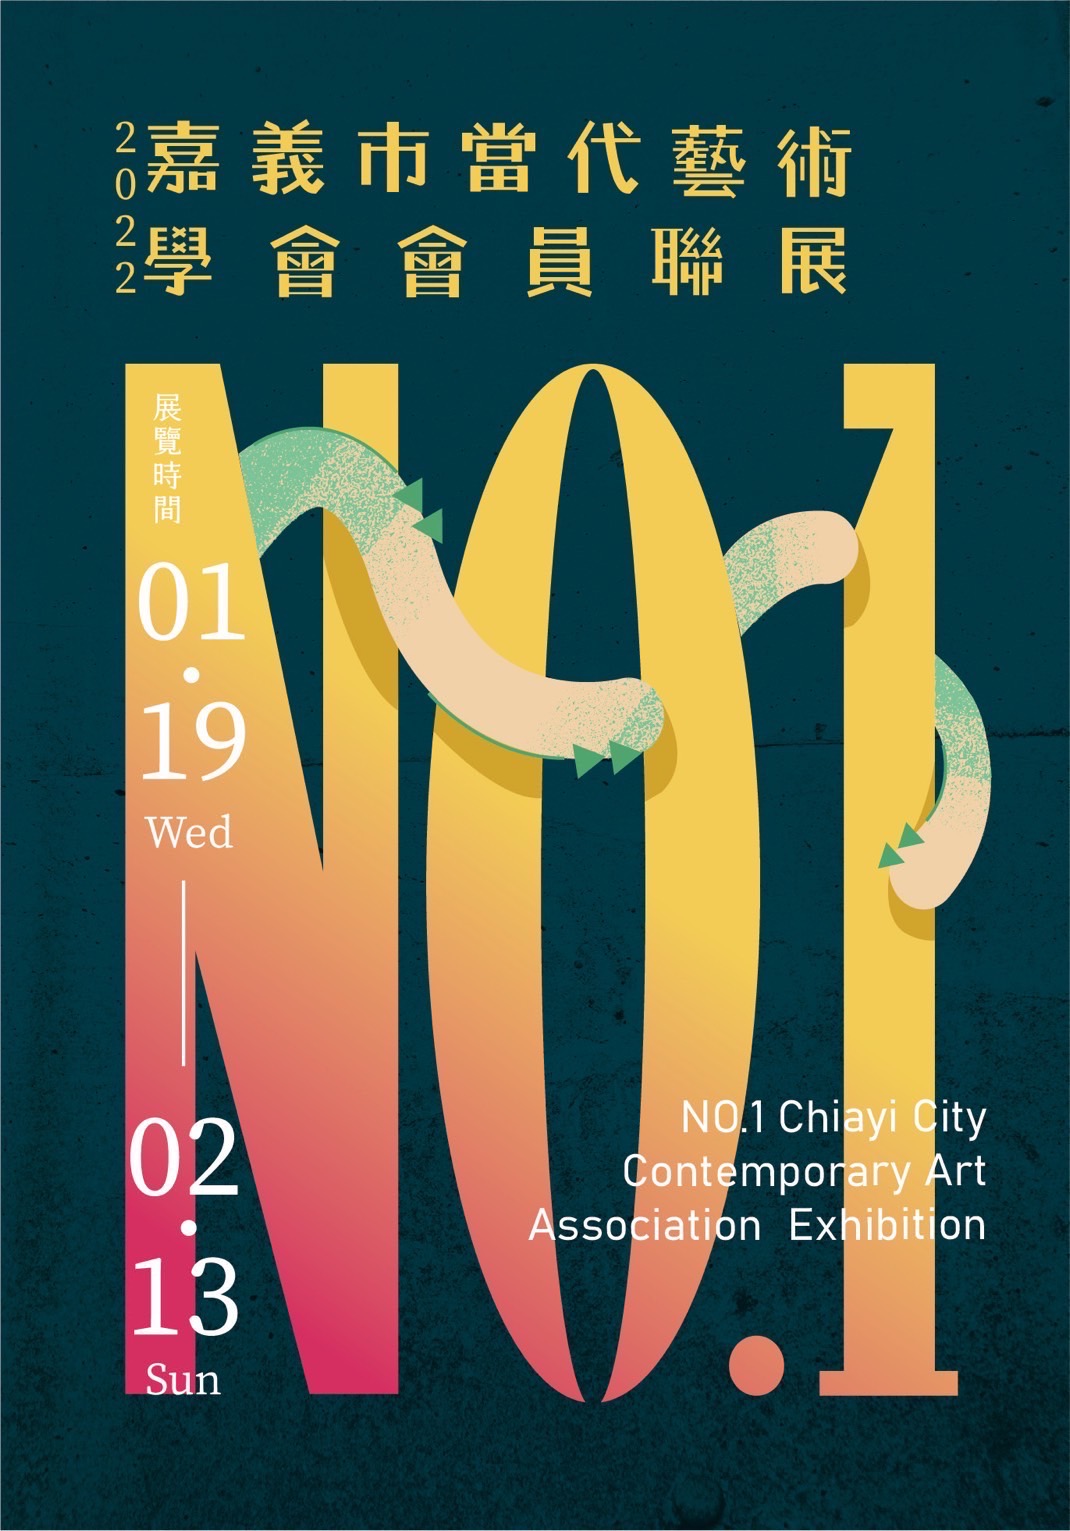 Poster promosi "No.1 Chiayi City Contemporary Art Association Exhibition" Sumber: Asosiasi Seni Kontemporer Kota Chiayi